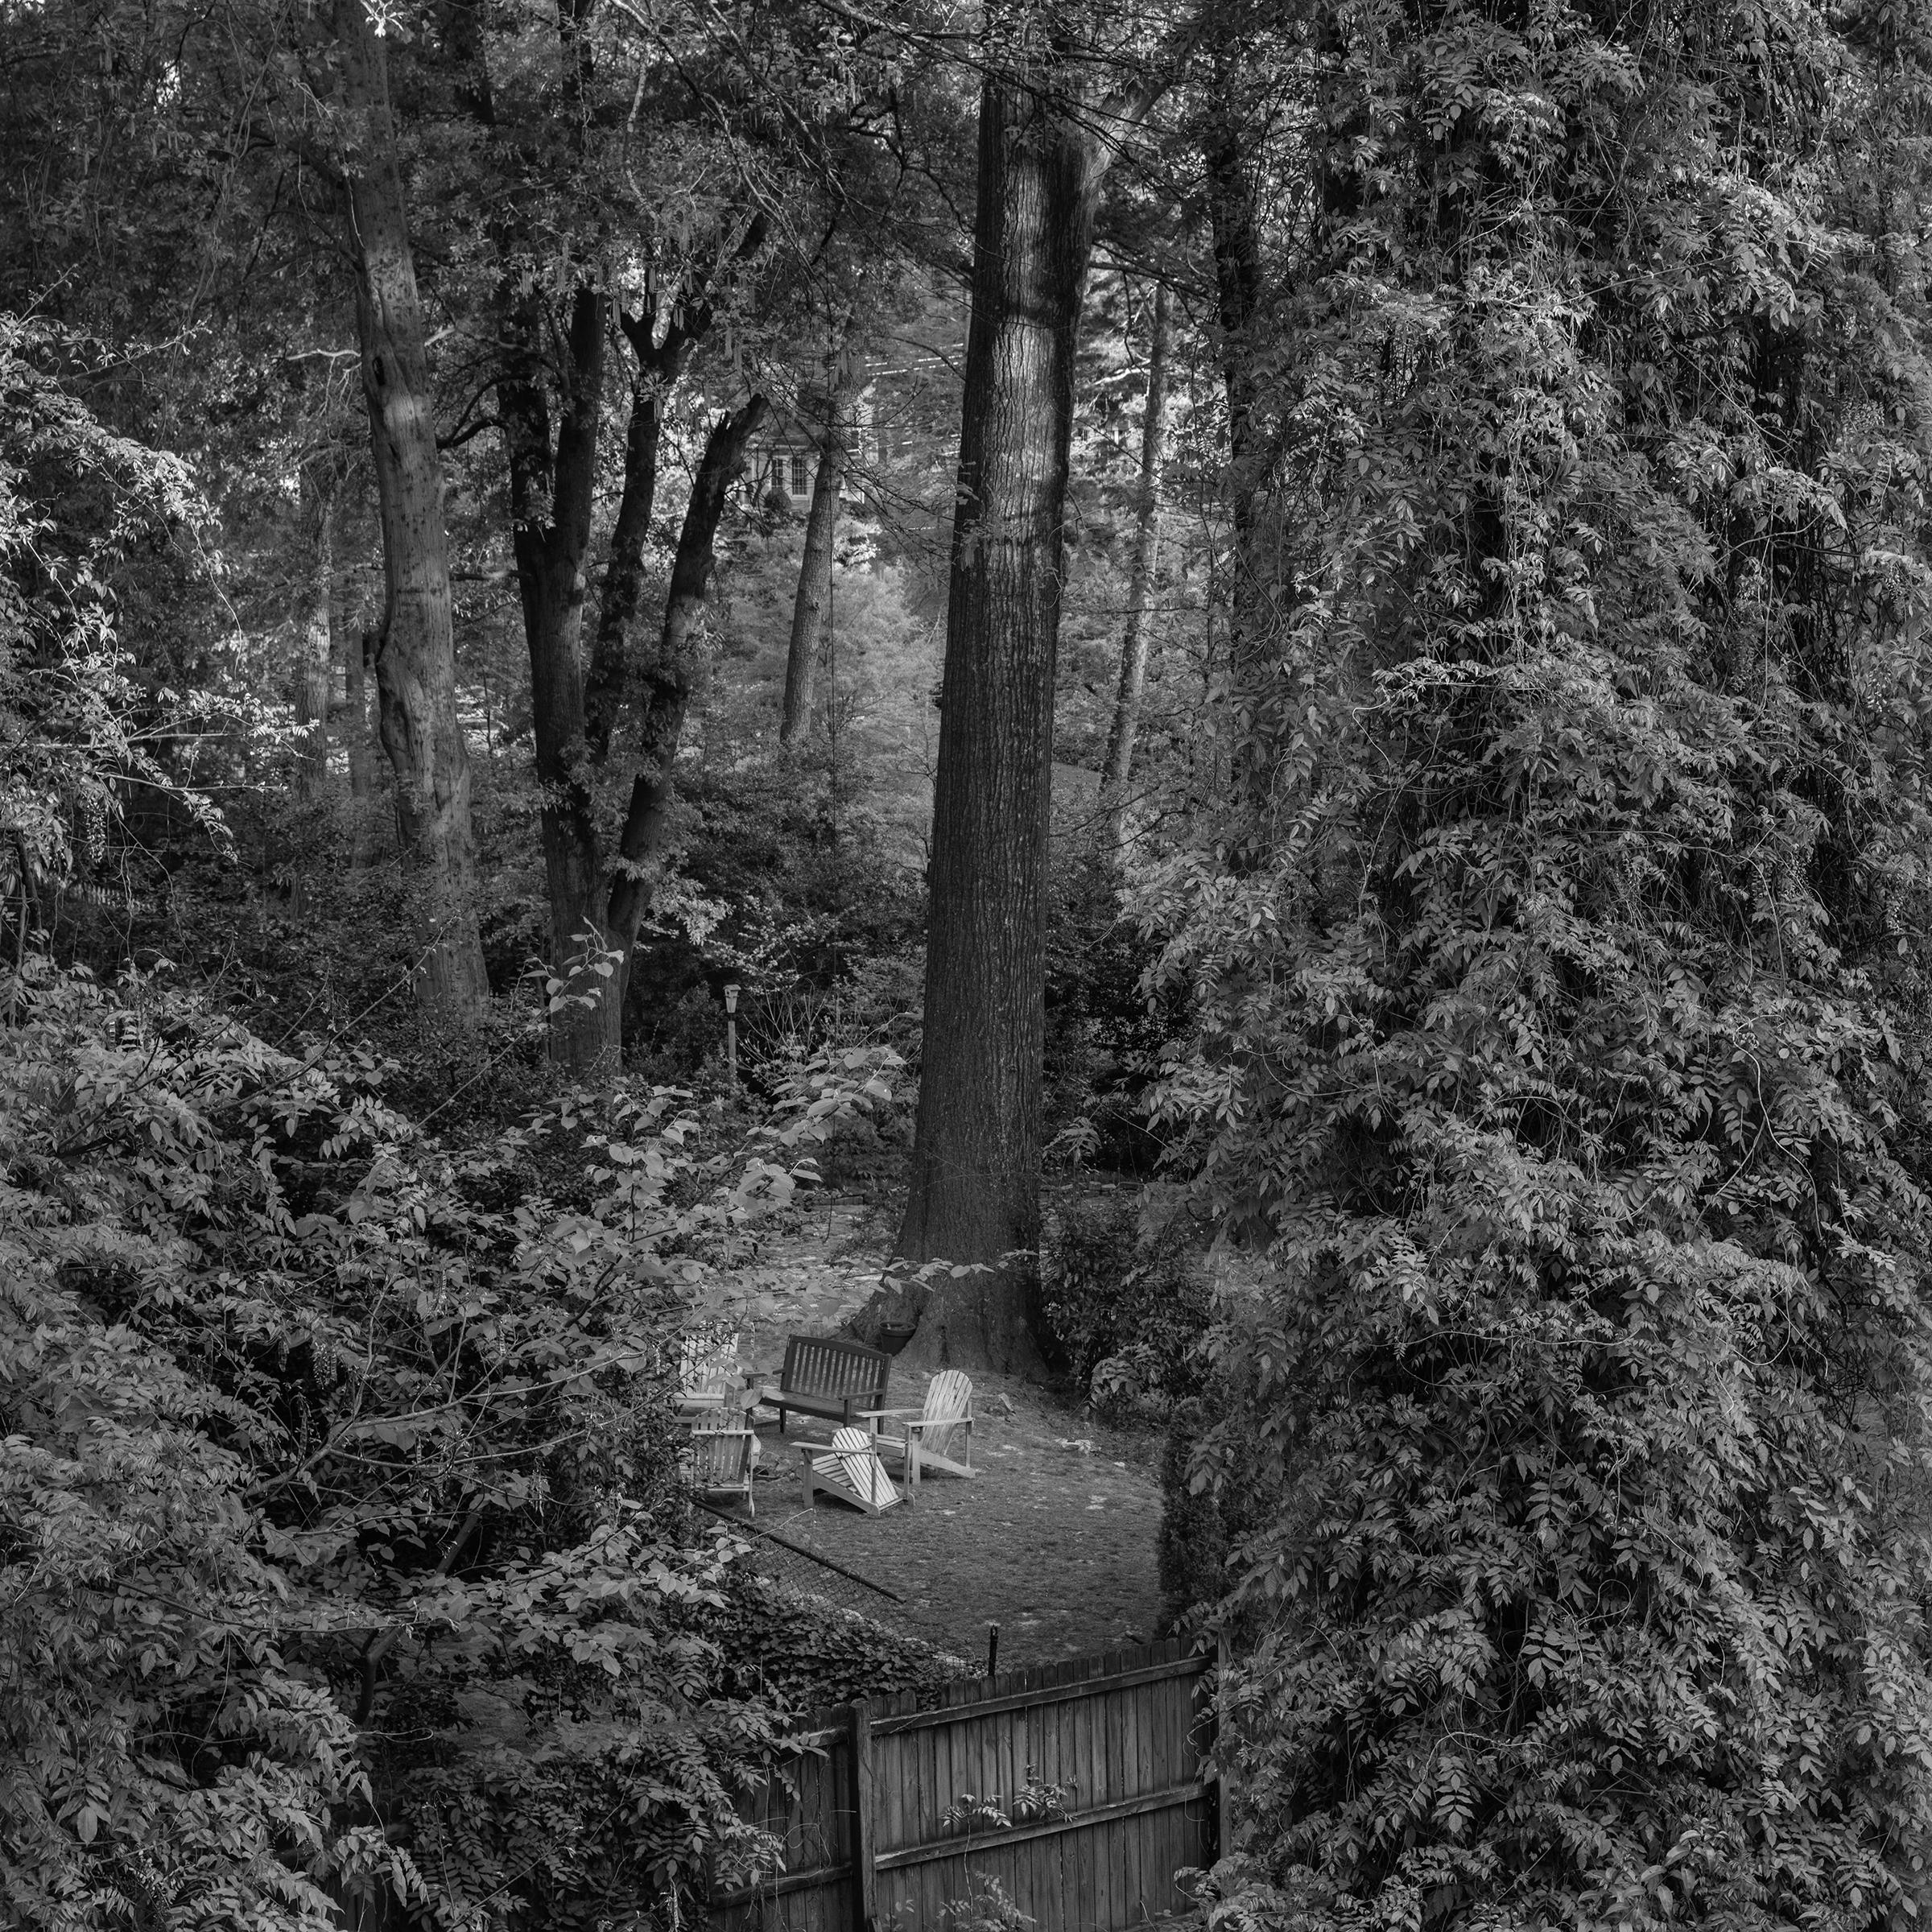 Landscape Photograph Richard Skoonberg - « Midtown Garden Party » - photographie de paysage en noir et blanc  - cour arrière